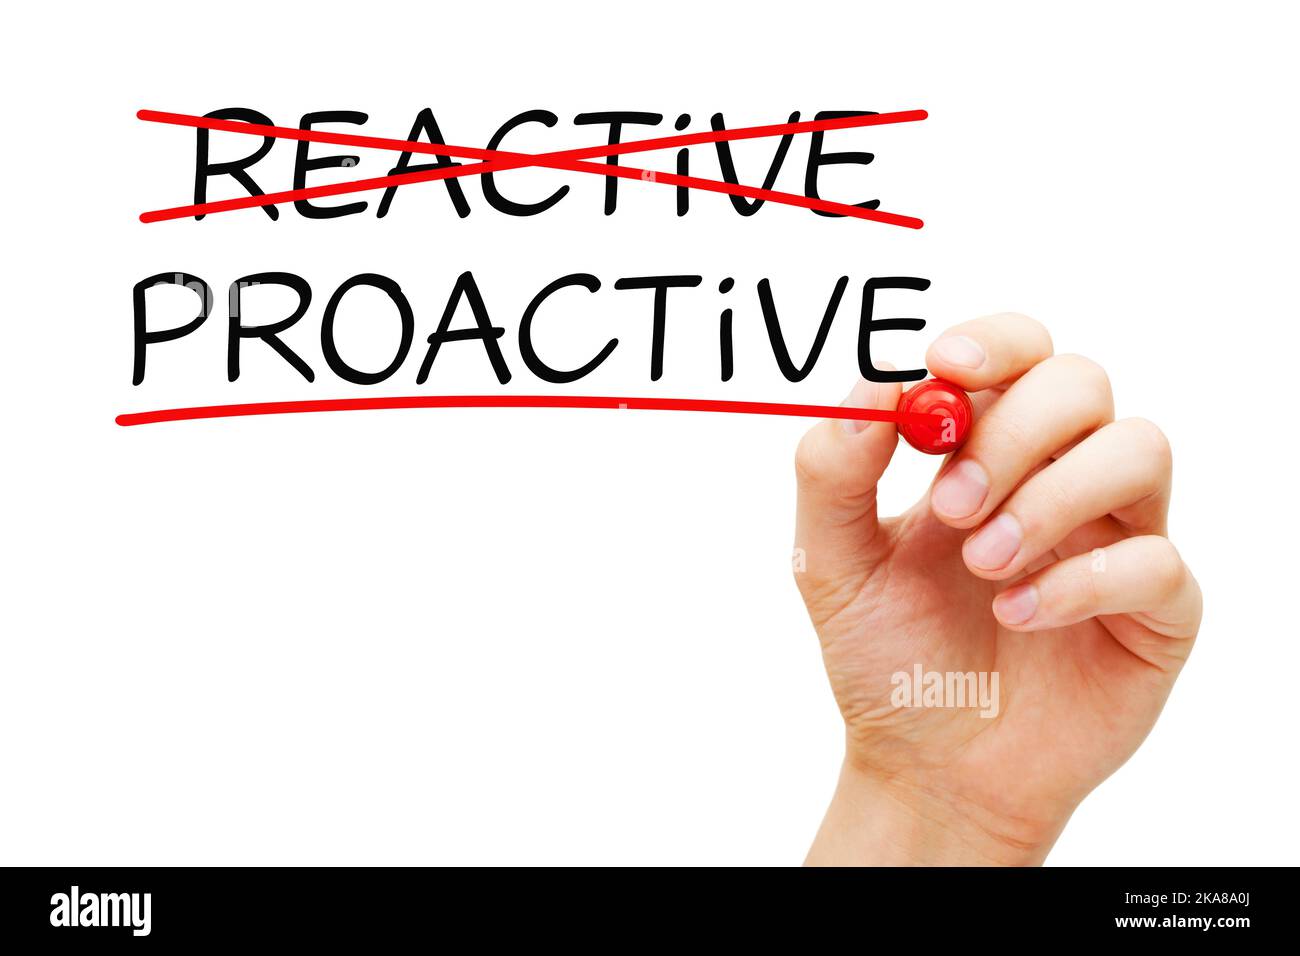 Scrittura a mano Proactive vs concetto reattivo circa l'importanza di agire in anticipo per affrontare un problema atteso, cambiamento o difficoltà. Foto Stock